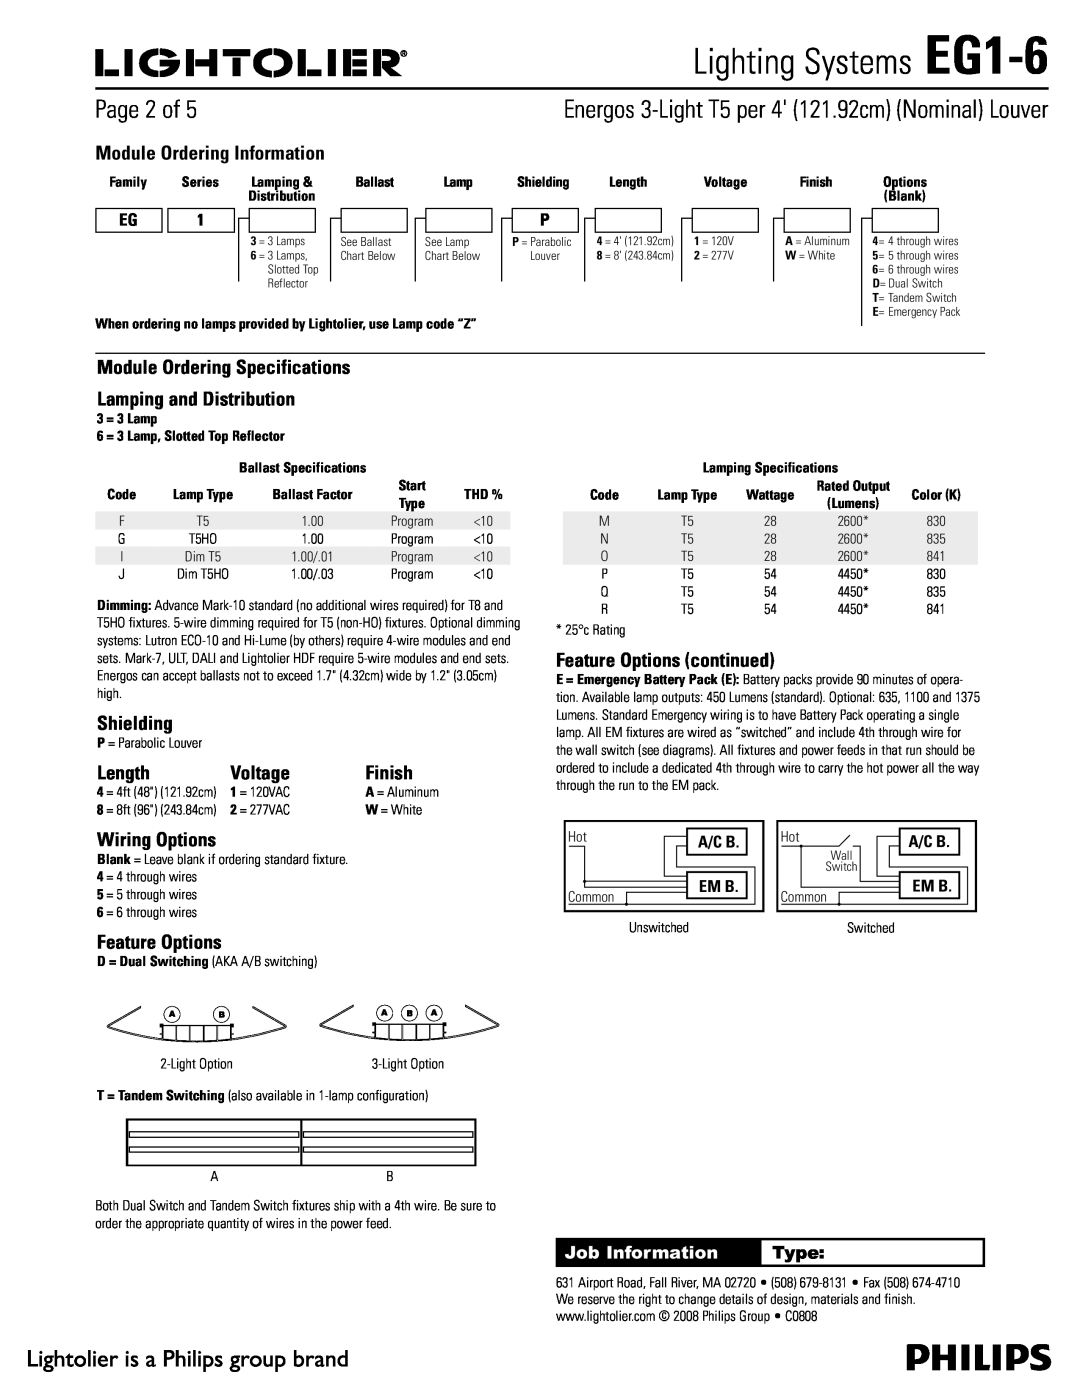 Lightolier specifications 1BHFPG, Lighting Systems EG1-6 